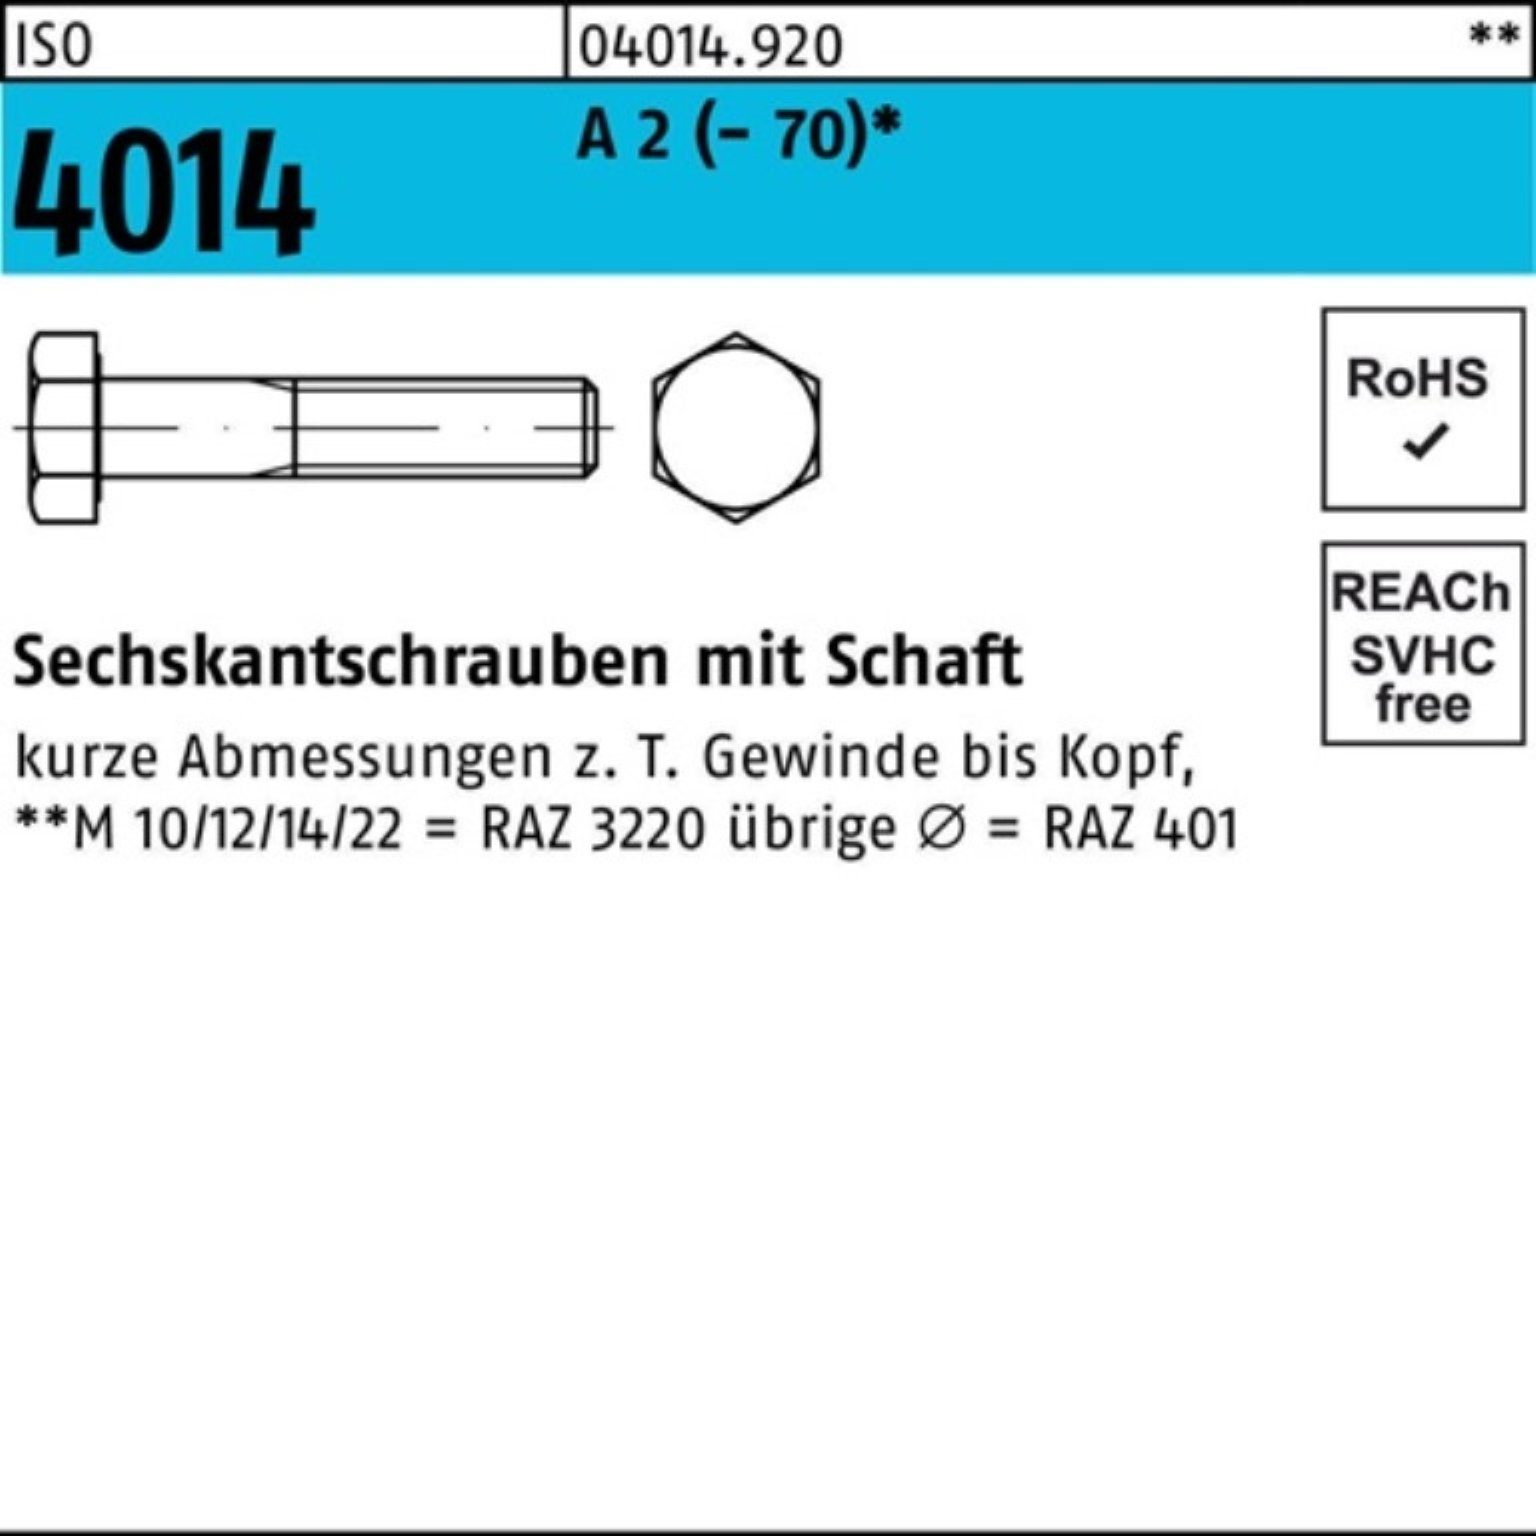 Bufab Sechskantschraube 100er Pack Sechskantschraube ISO 4014 Schaft M14x 75 A 2 (70) 50 St